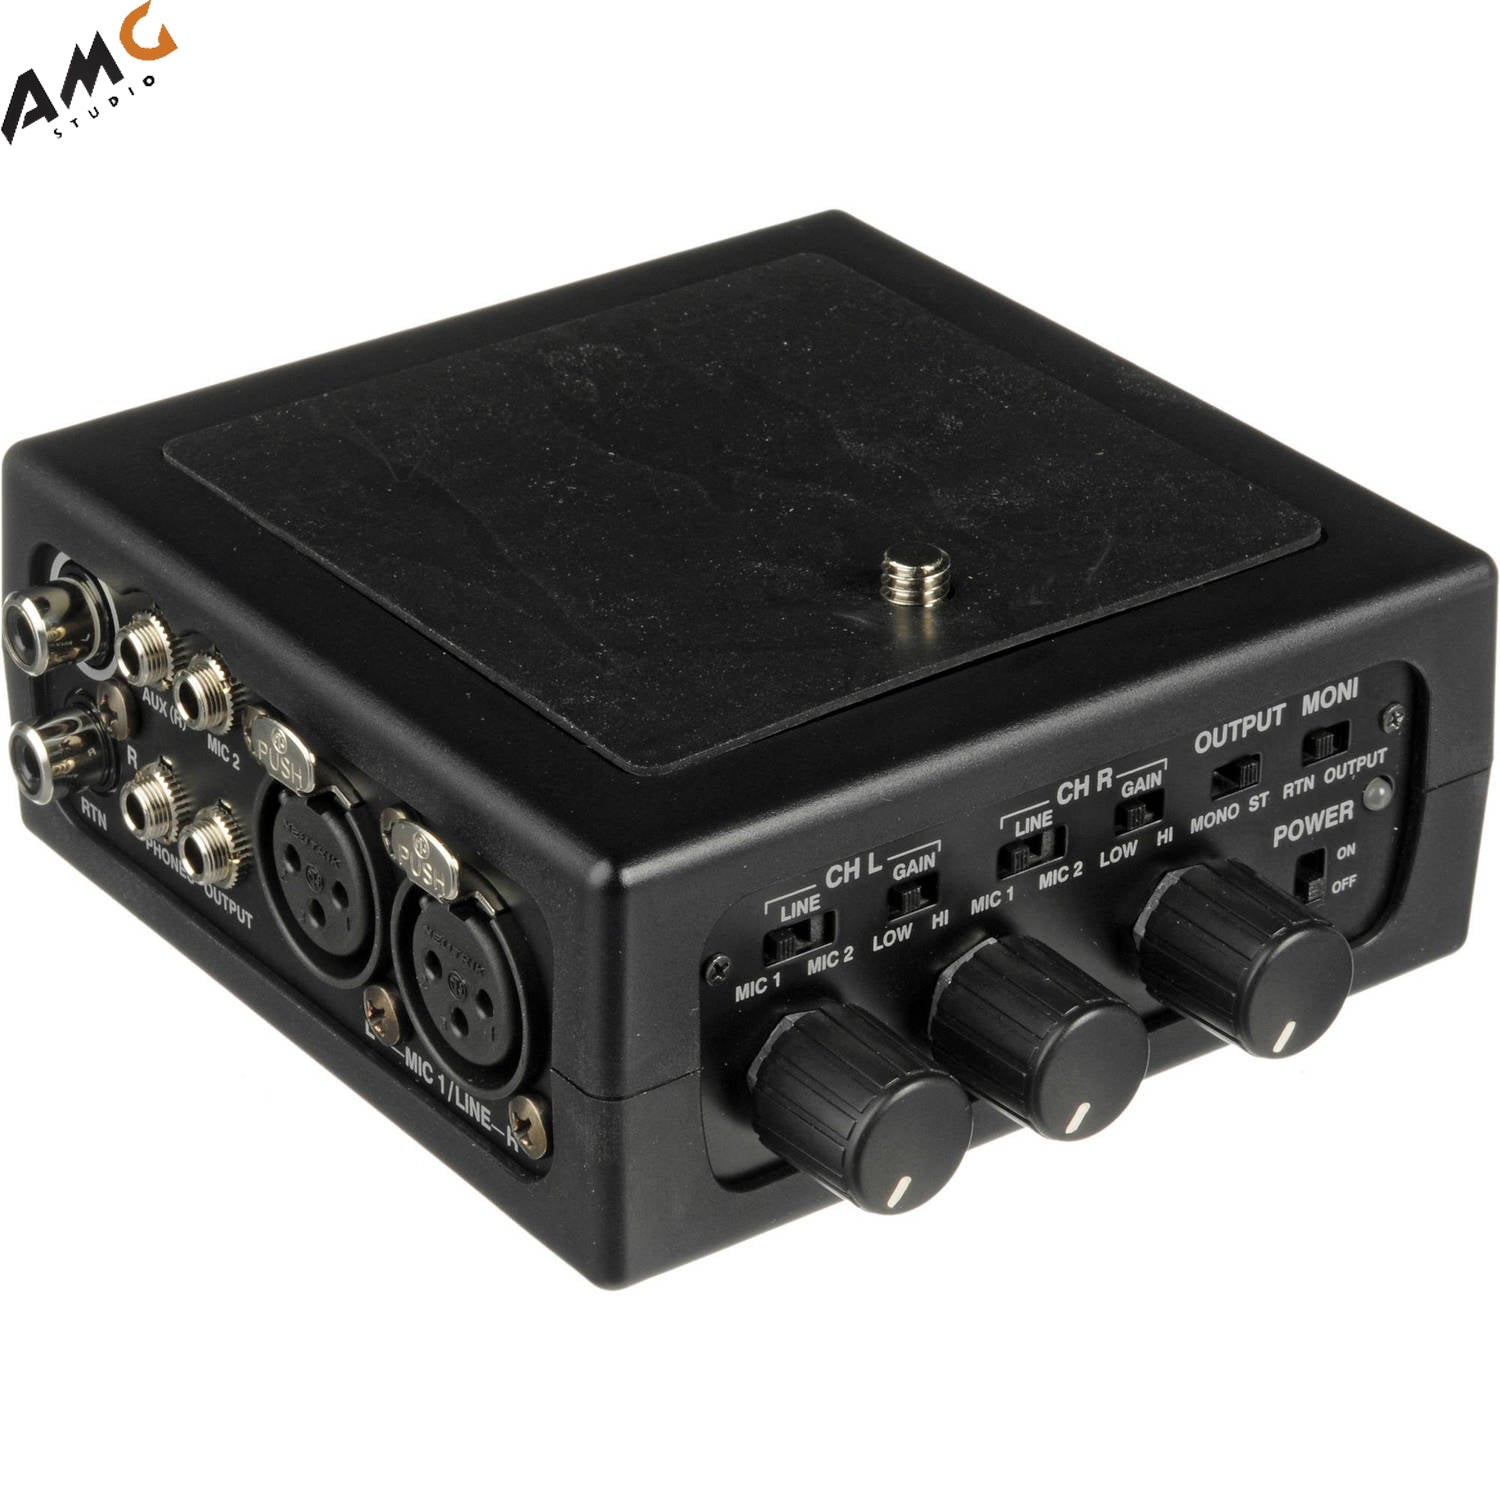 Azden FMX-DSLR Portable Audio Mixer for Digital SLR Camera - Studio AMG